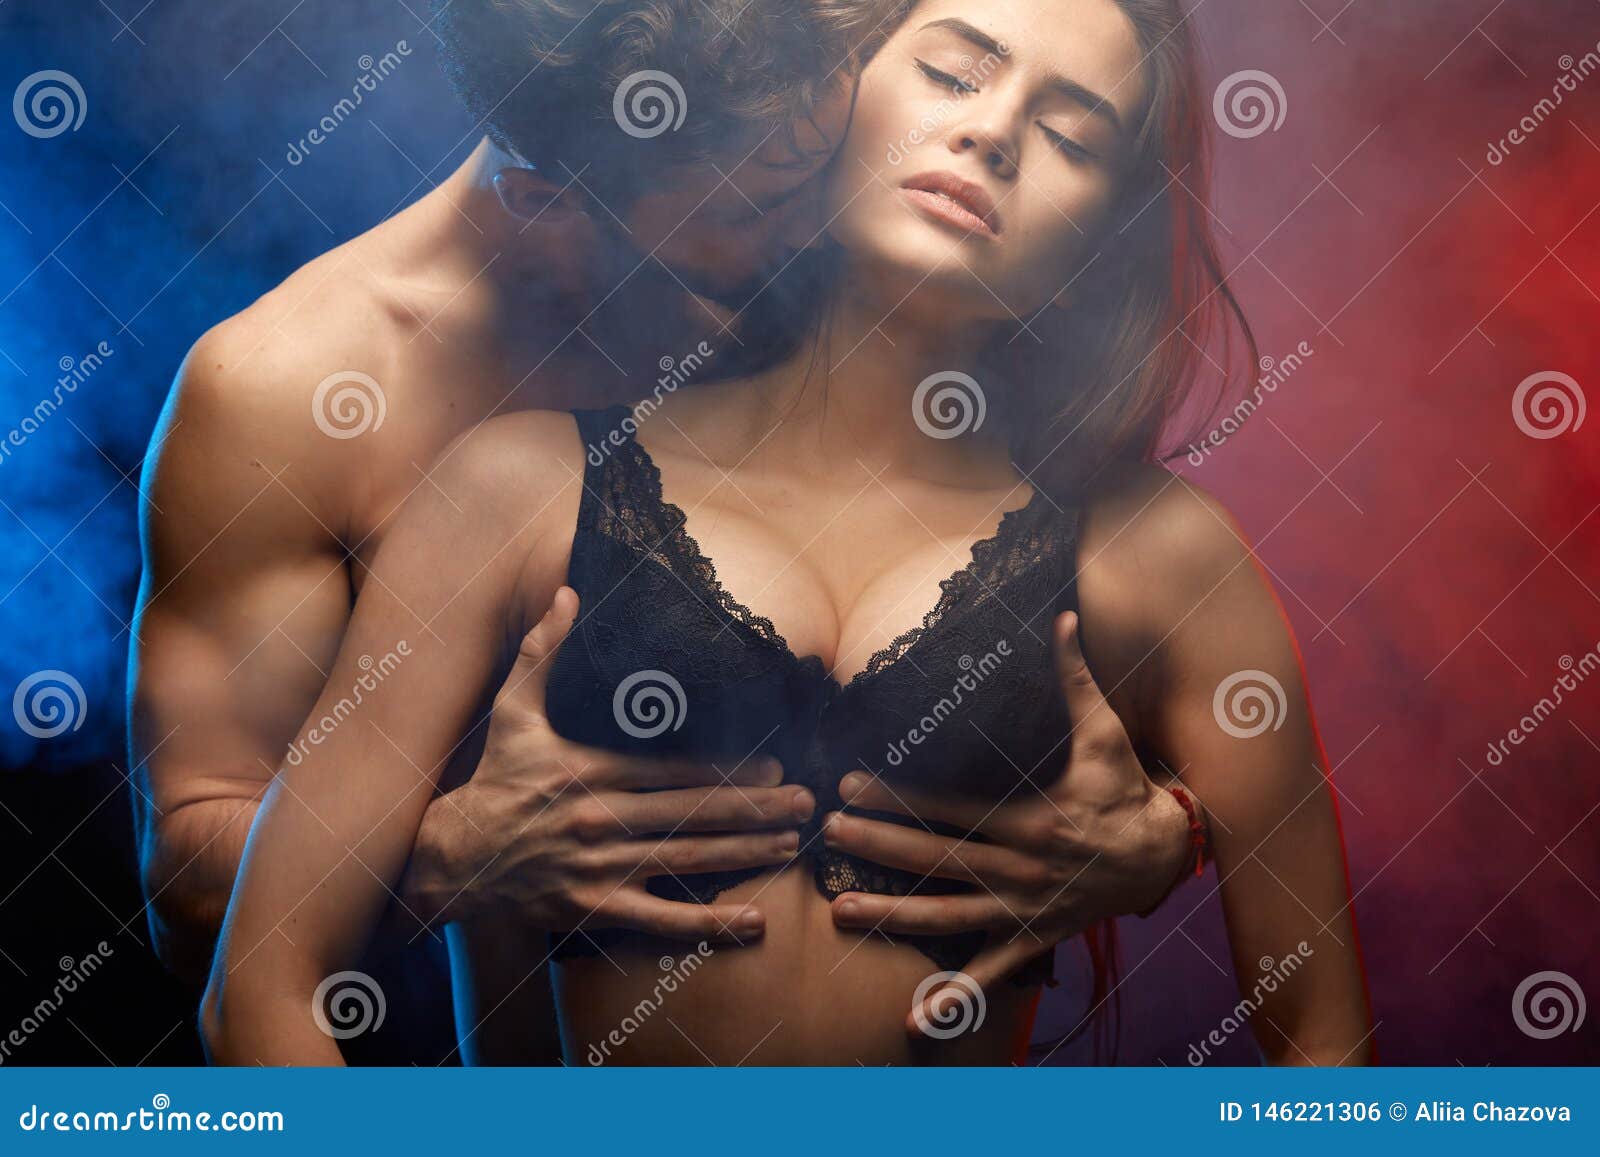 парень целует в грудь что это значит фото 75